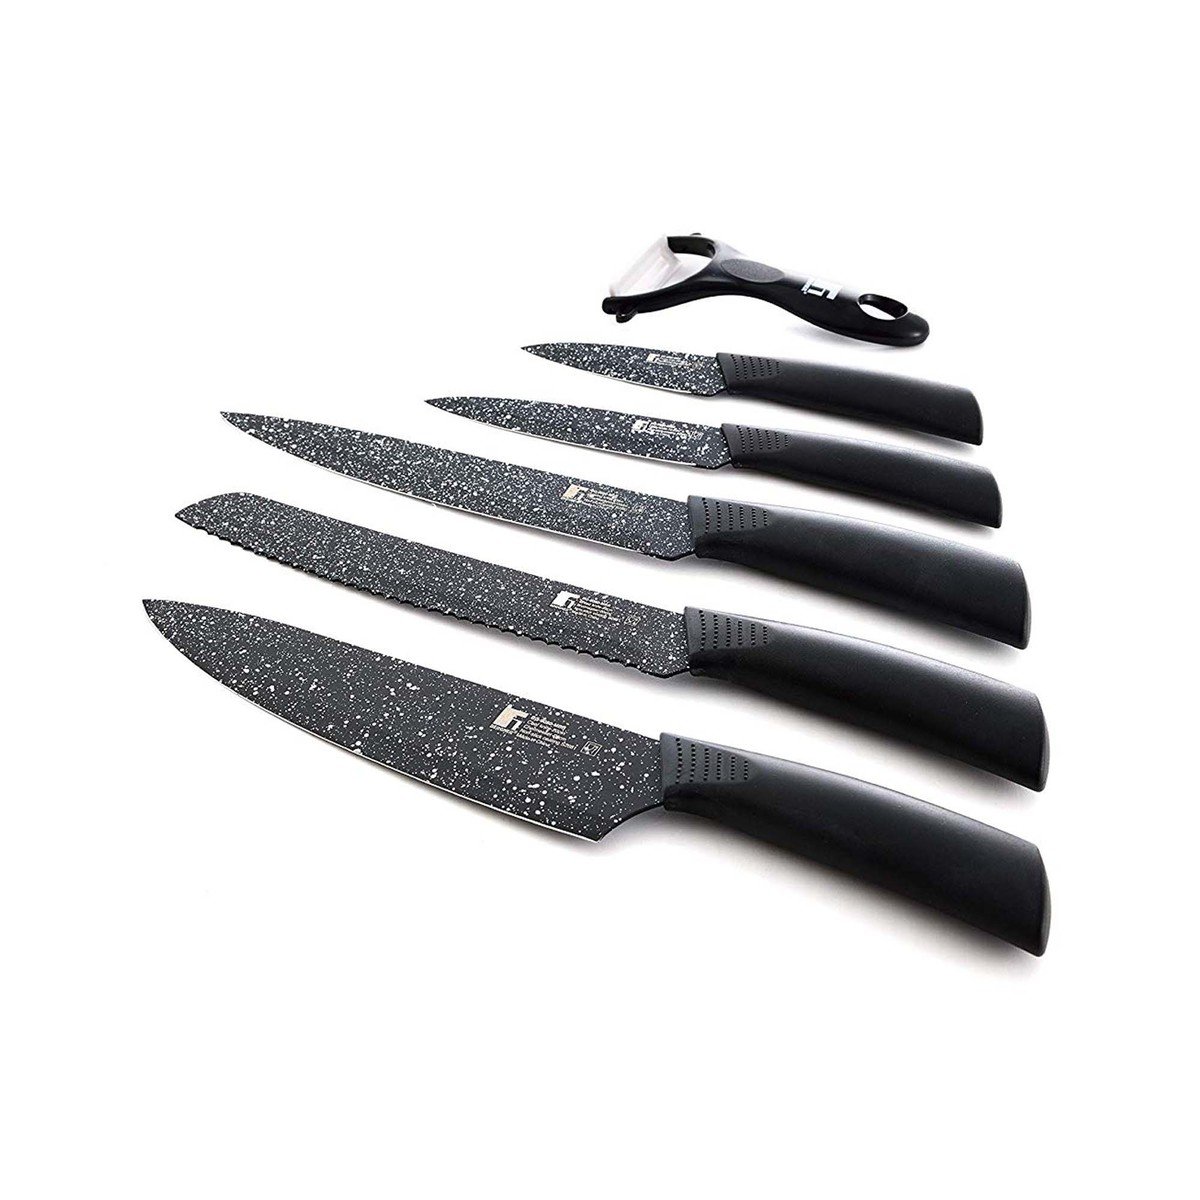 Bergner Stainless Steel Knives Set Bergamo 9080 6pcs